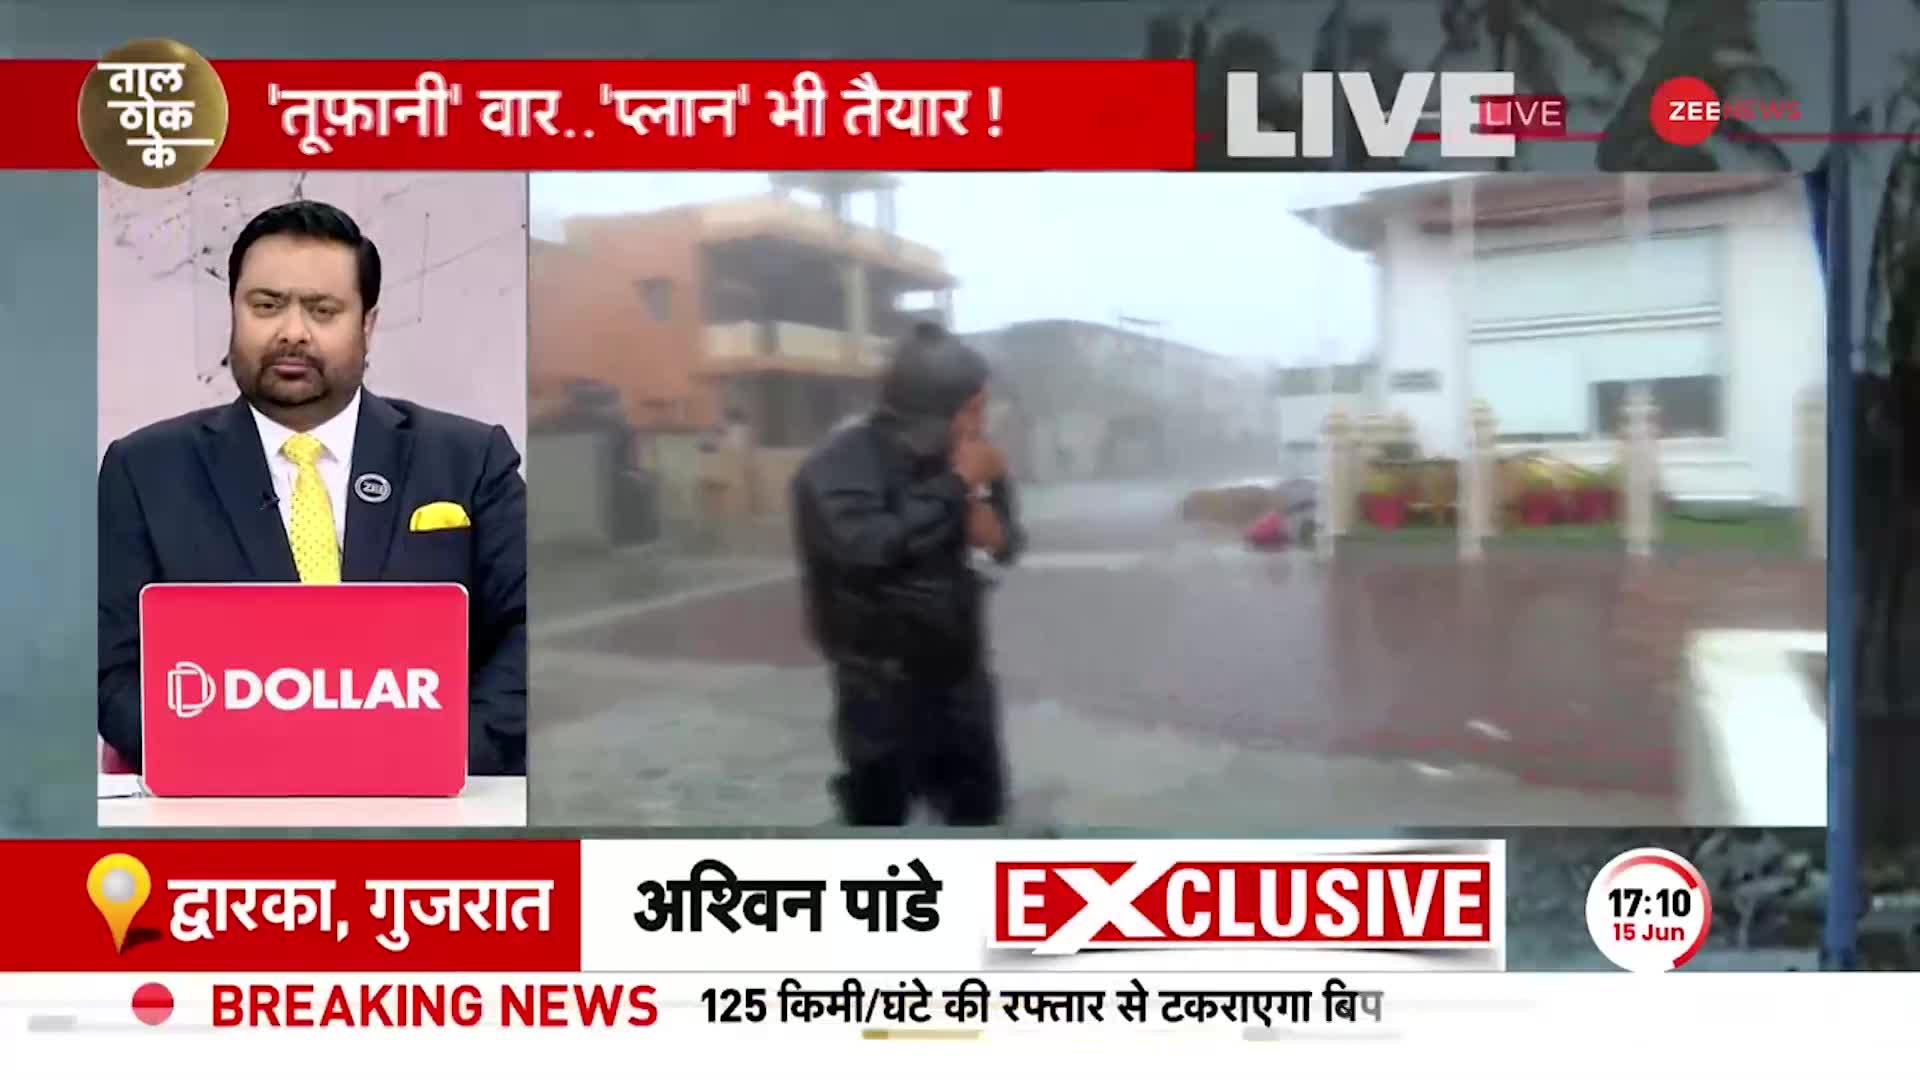 तूफान की लहरों के बीच Zee News का रिपोर्टर, देखिए होश उड़ाने वाली तस्वीरें!